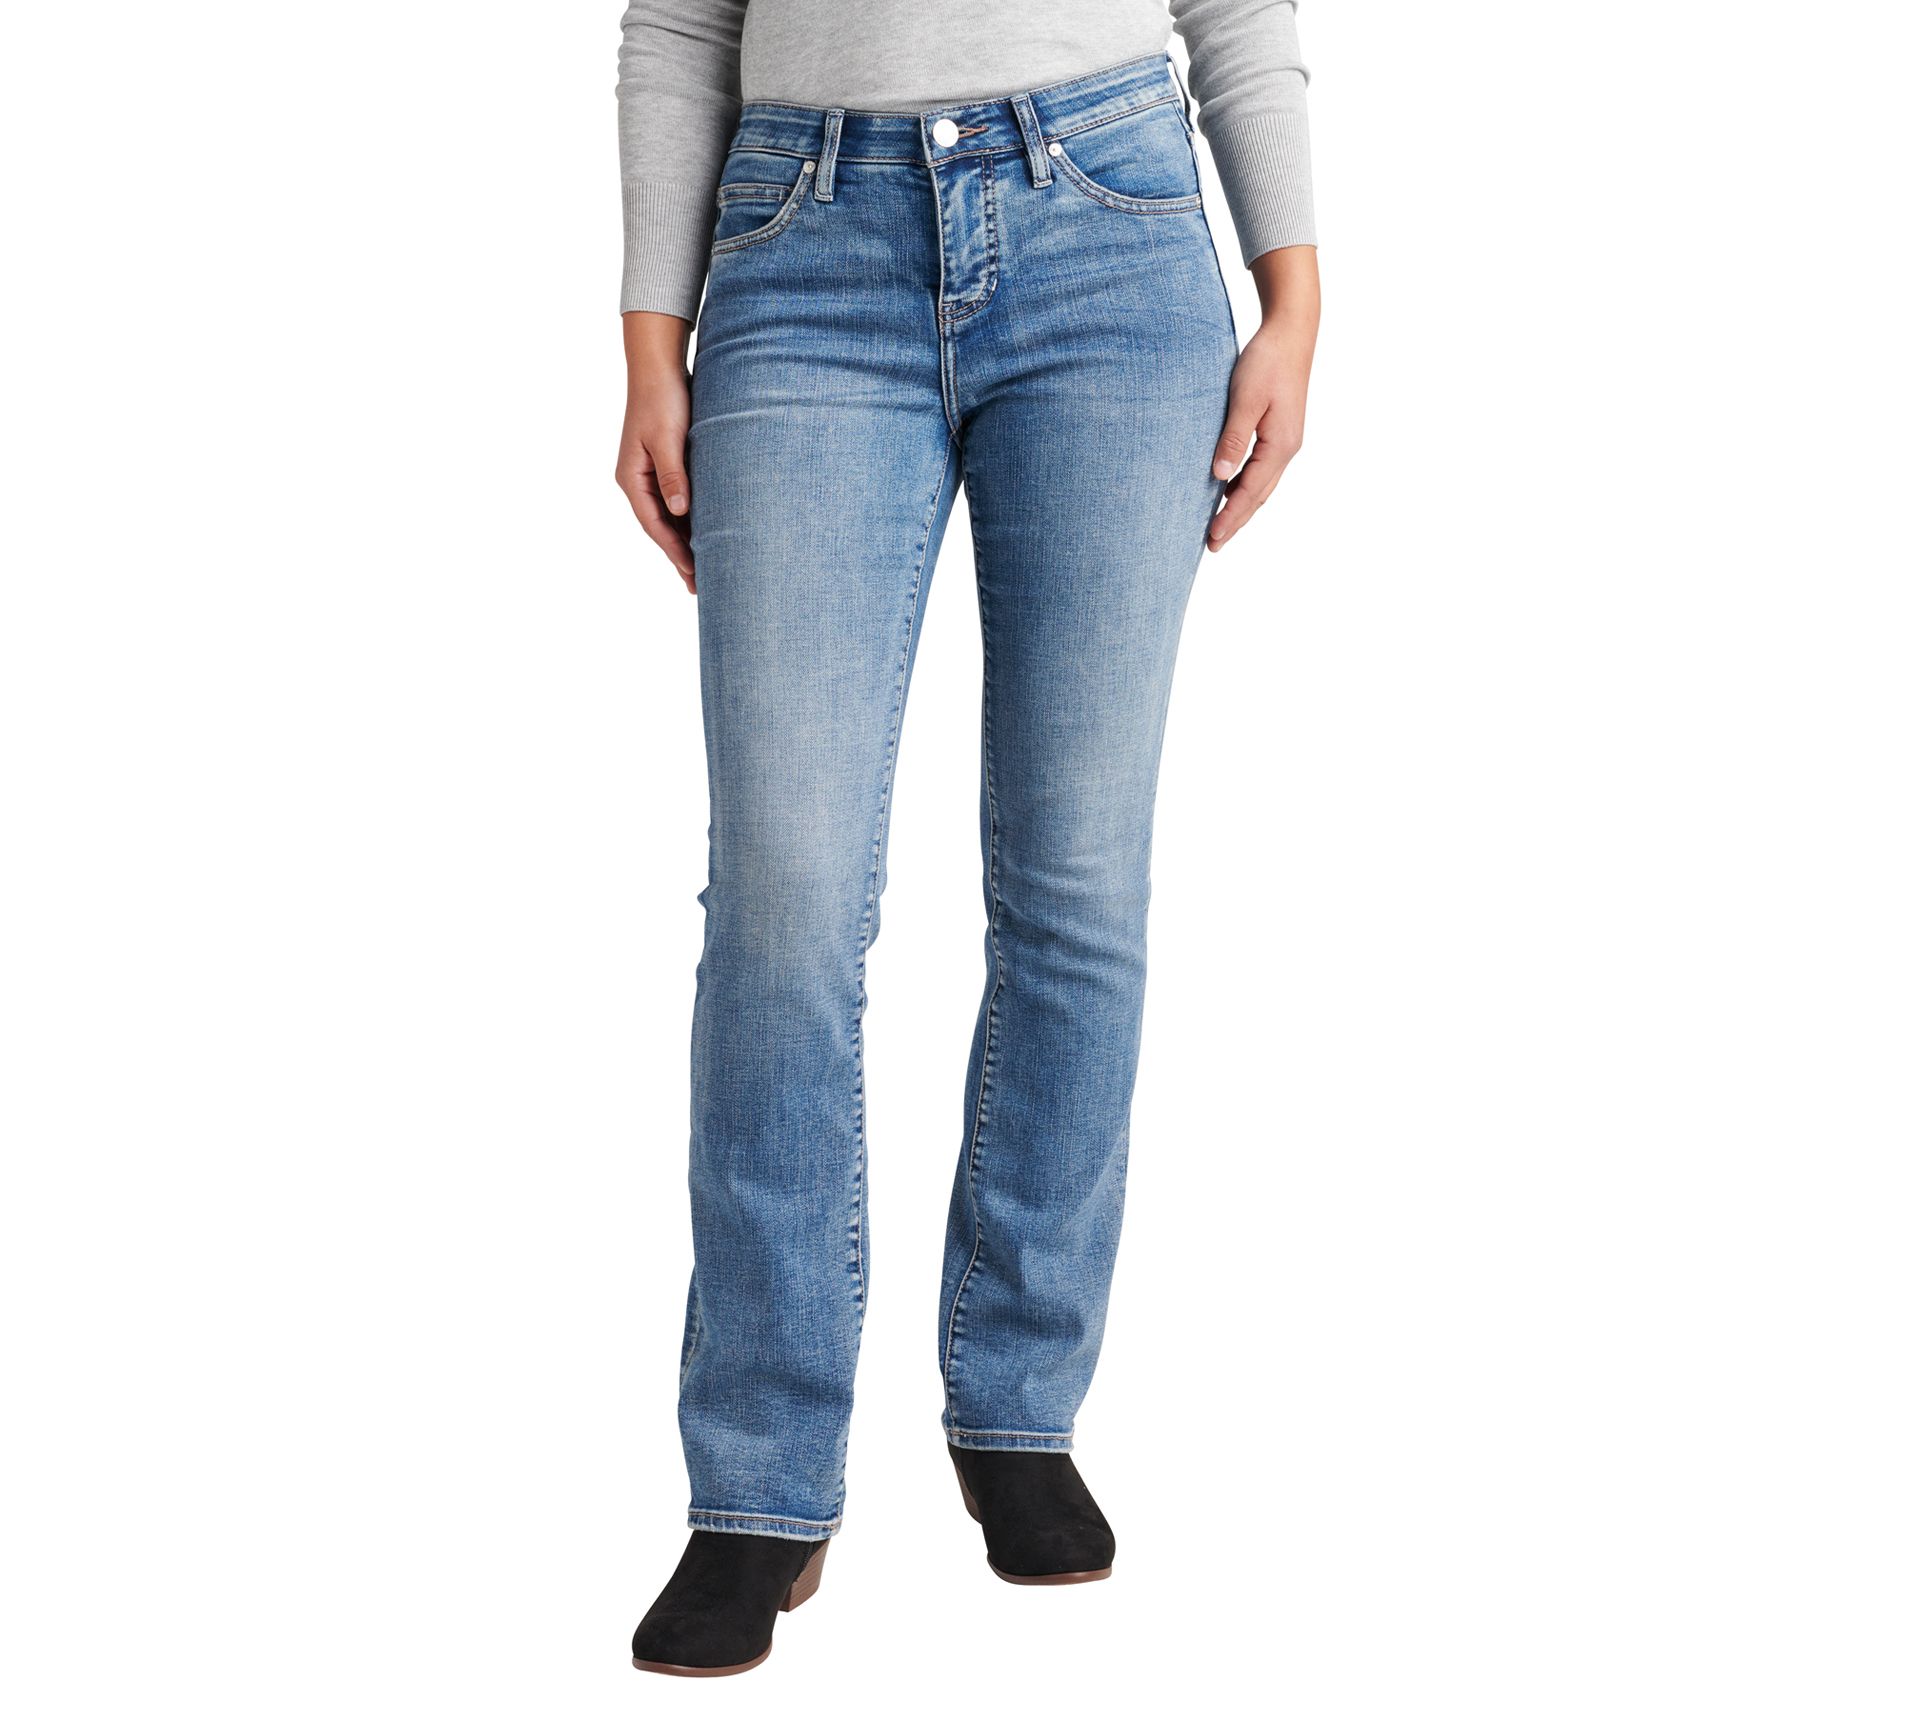 JAG Jeans Eloise Mid Rise Bootcut Jeans - Mid Vintage - QVC.com